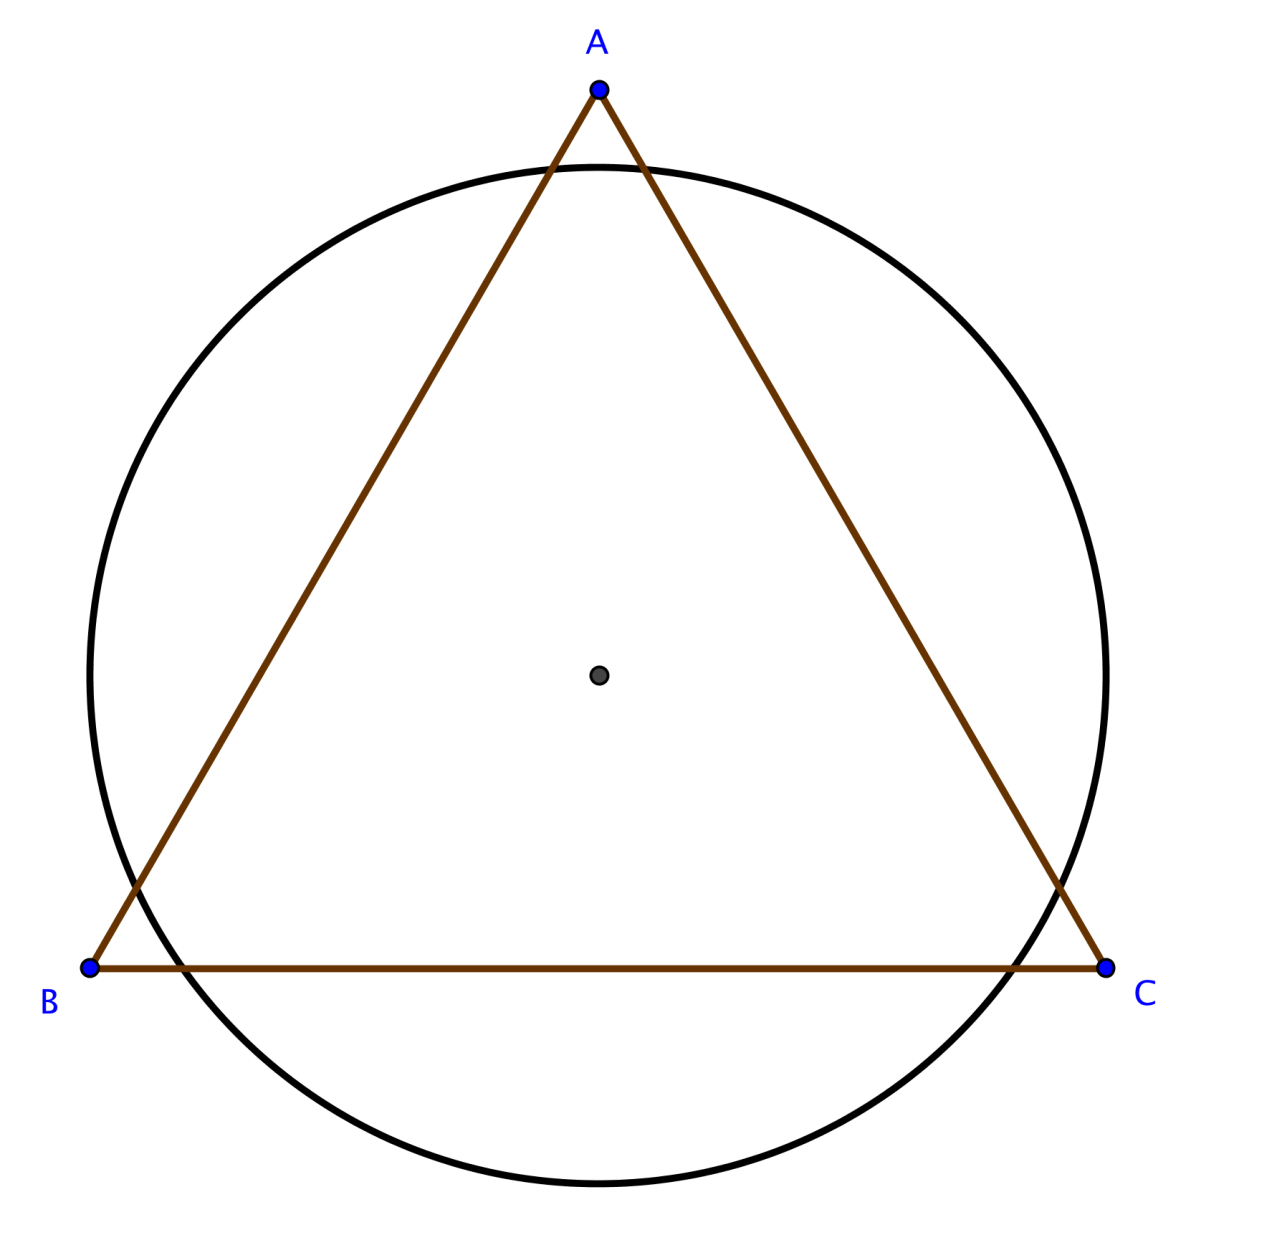 Circle triangle. Равносторонний треугольник в круге. Чертим равносторонний треугольник. Равносторонний треугольник в окружности. Треугольник внутри окружности.